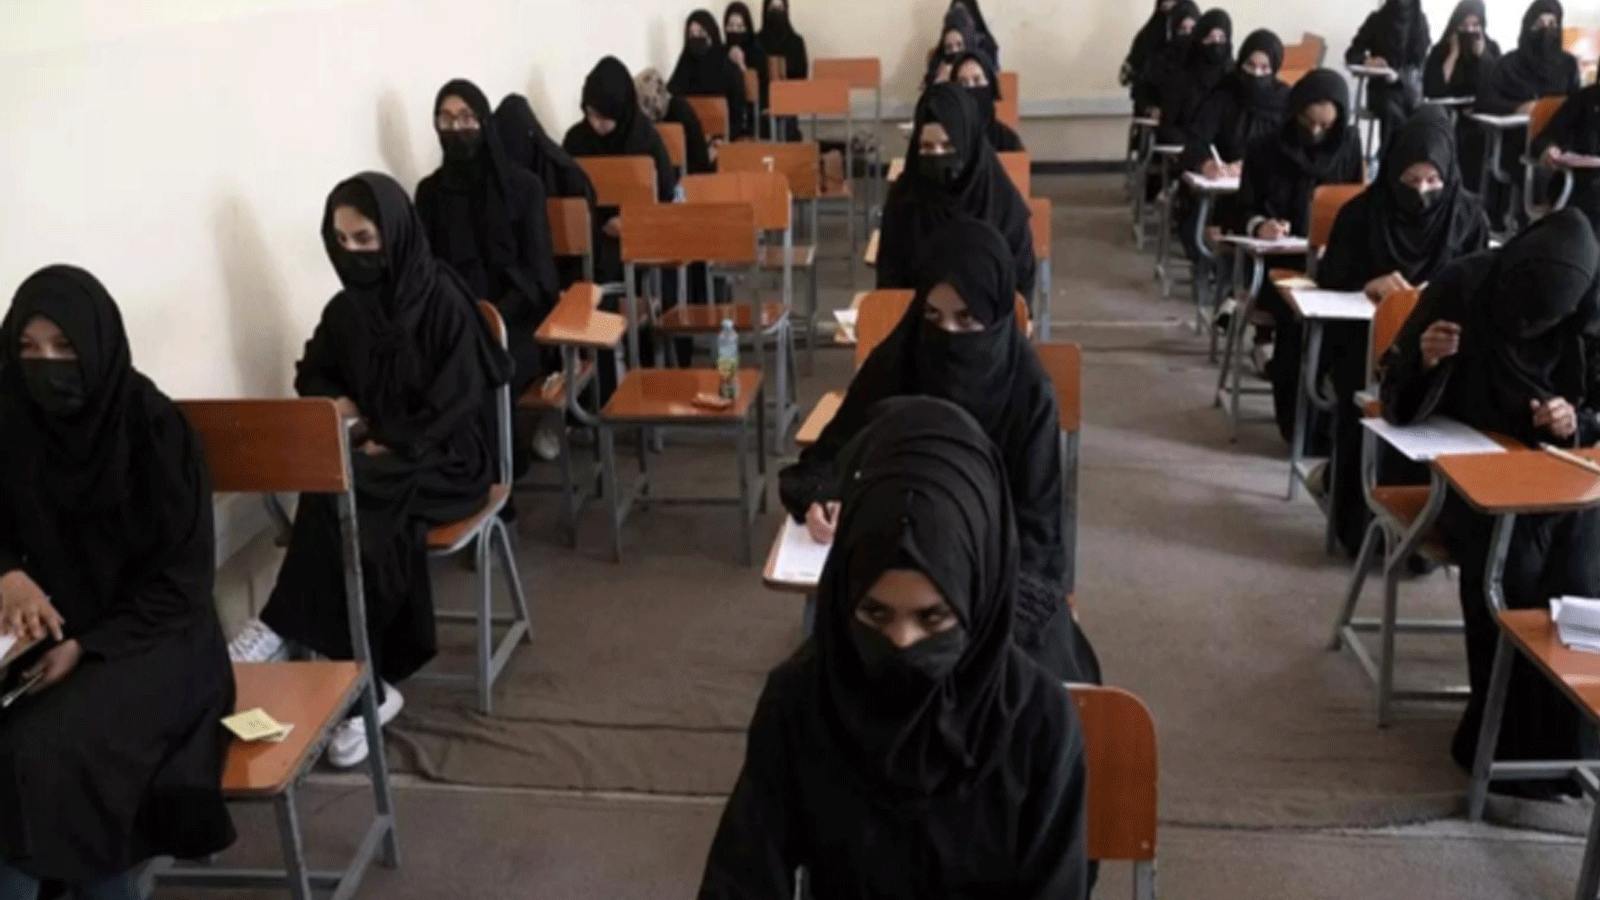 طالبات أفغانيات يؤدين امتحانات القبول في جامعة كابول قبل فرض الحظر على الجامعات والمدارس الابتدائية